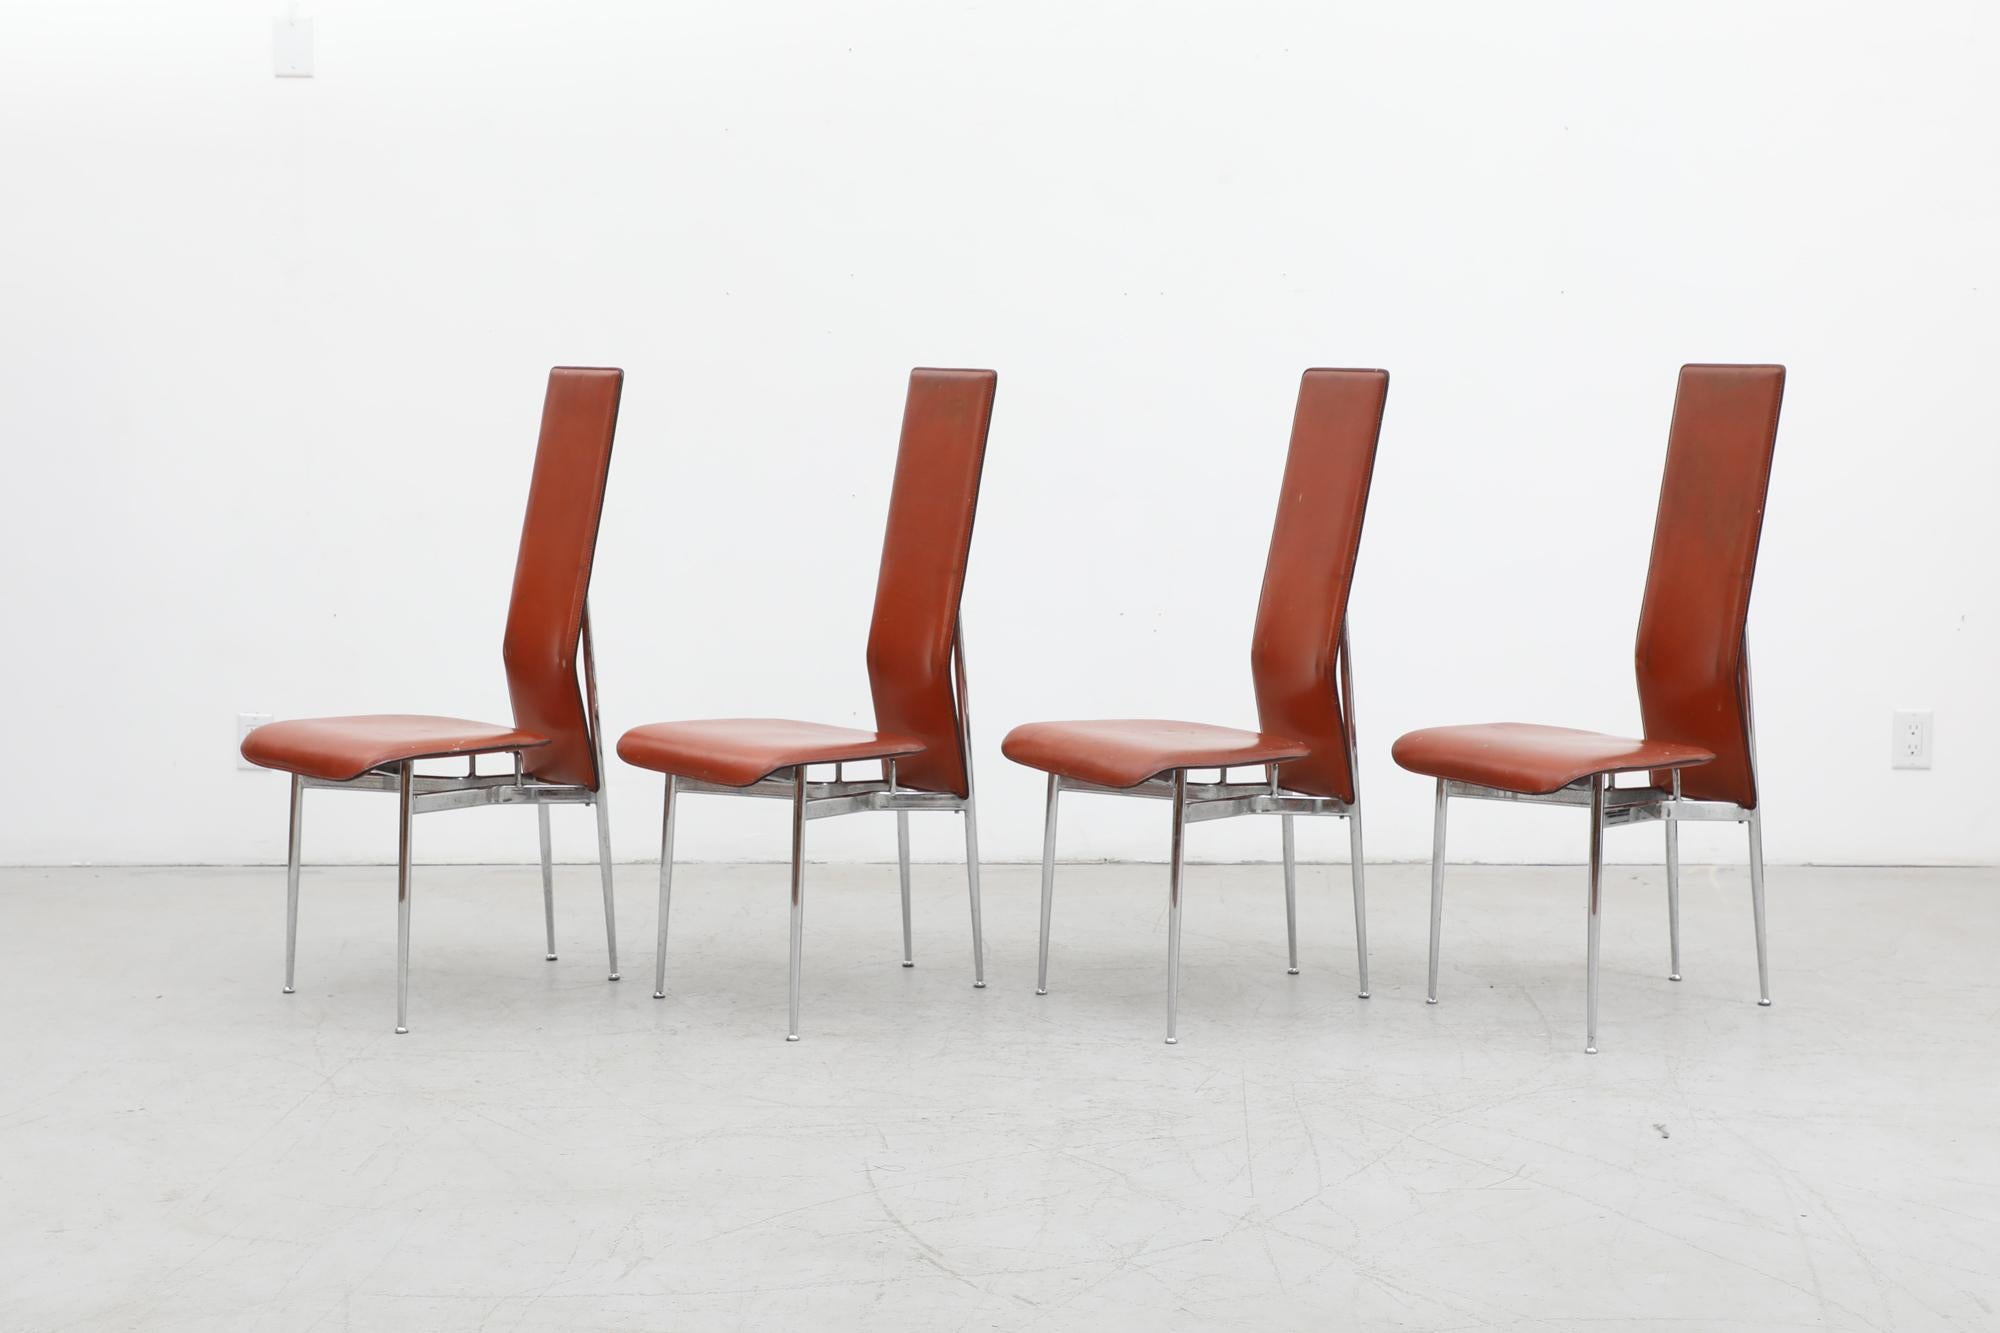 Ensemble de 4 chaises 'S44' par Giancarlo Vegni & Gianfranco Gualtierotti pour Fasem, 1980's. Ces chaises ont des sièges en cuir cognac avec des cadres chromés et sont en état d'origine avec une usure visible. Quelques piqûres et décolorations sur